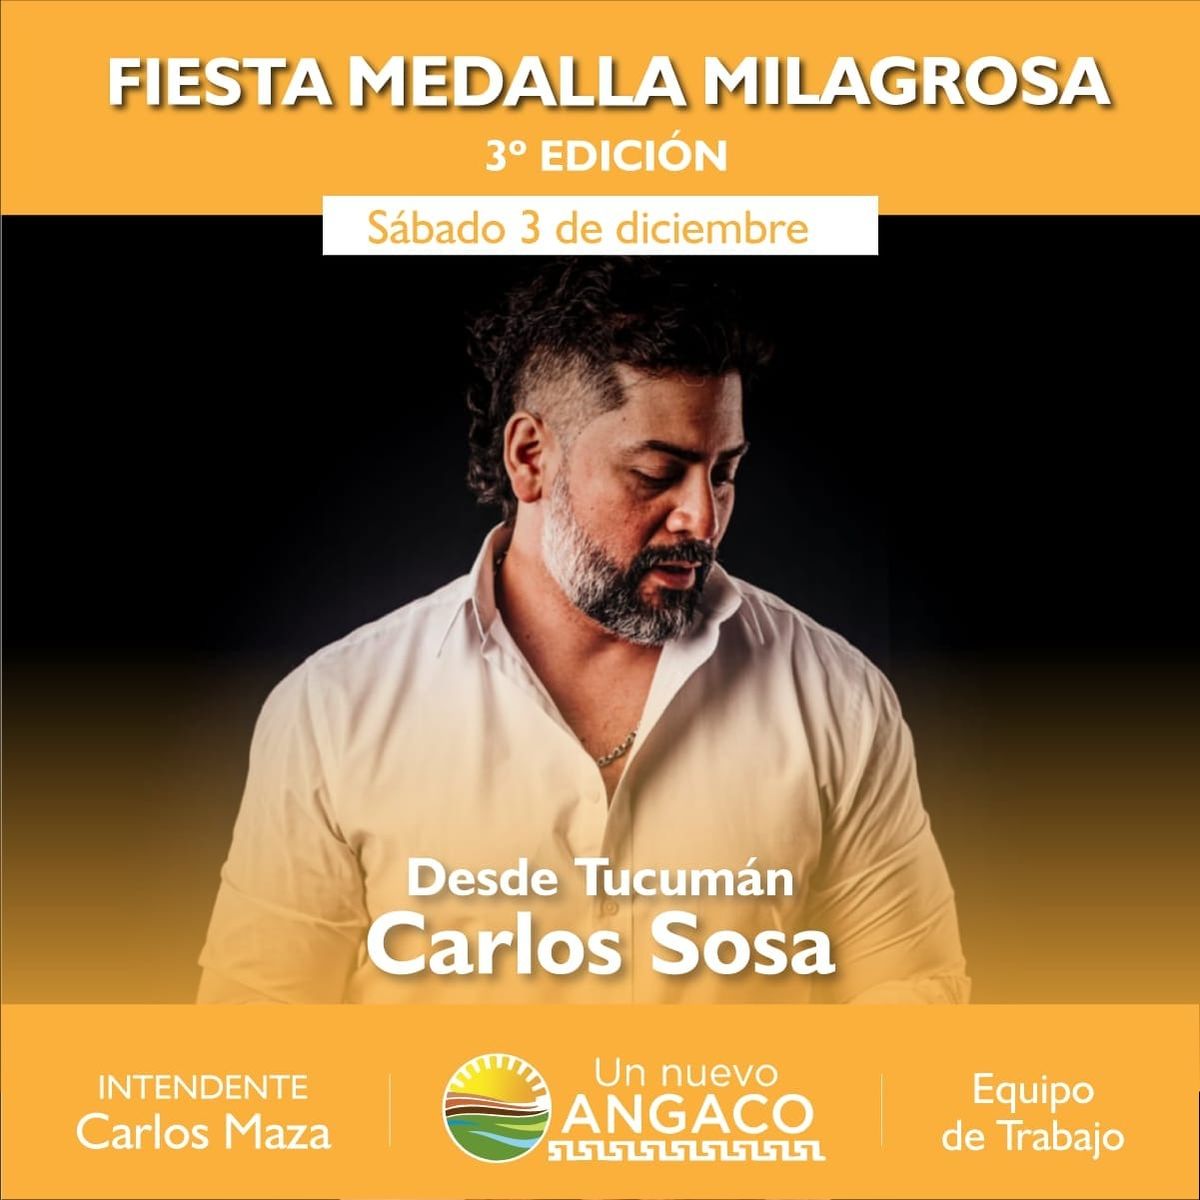 Angaco tendrá la 3ª edición de la Fiesta en Honor a la Medalla Milagrosa